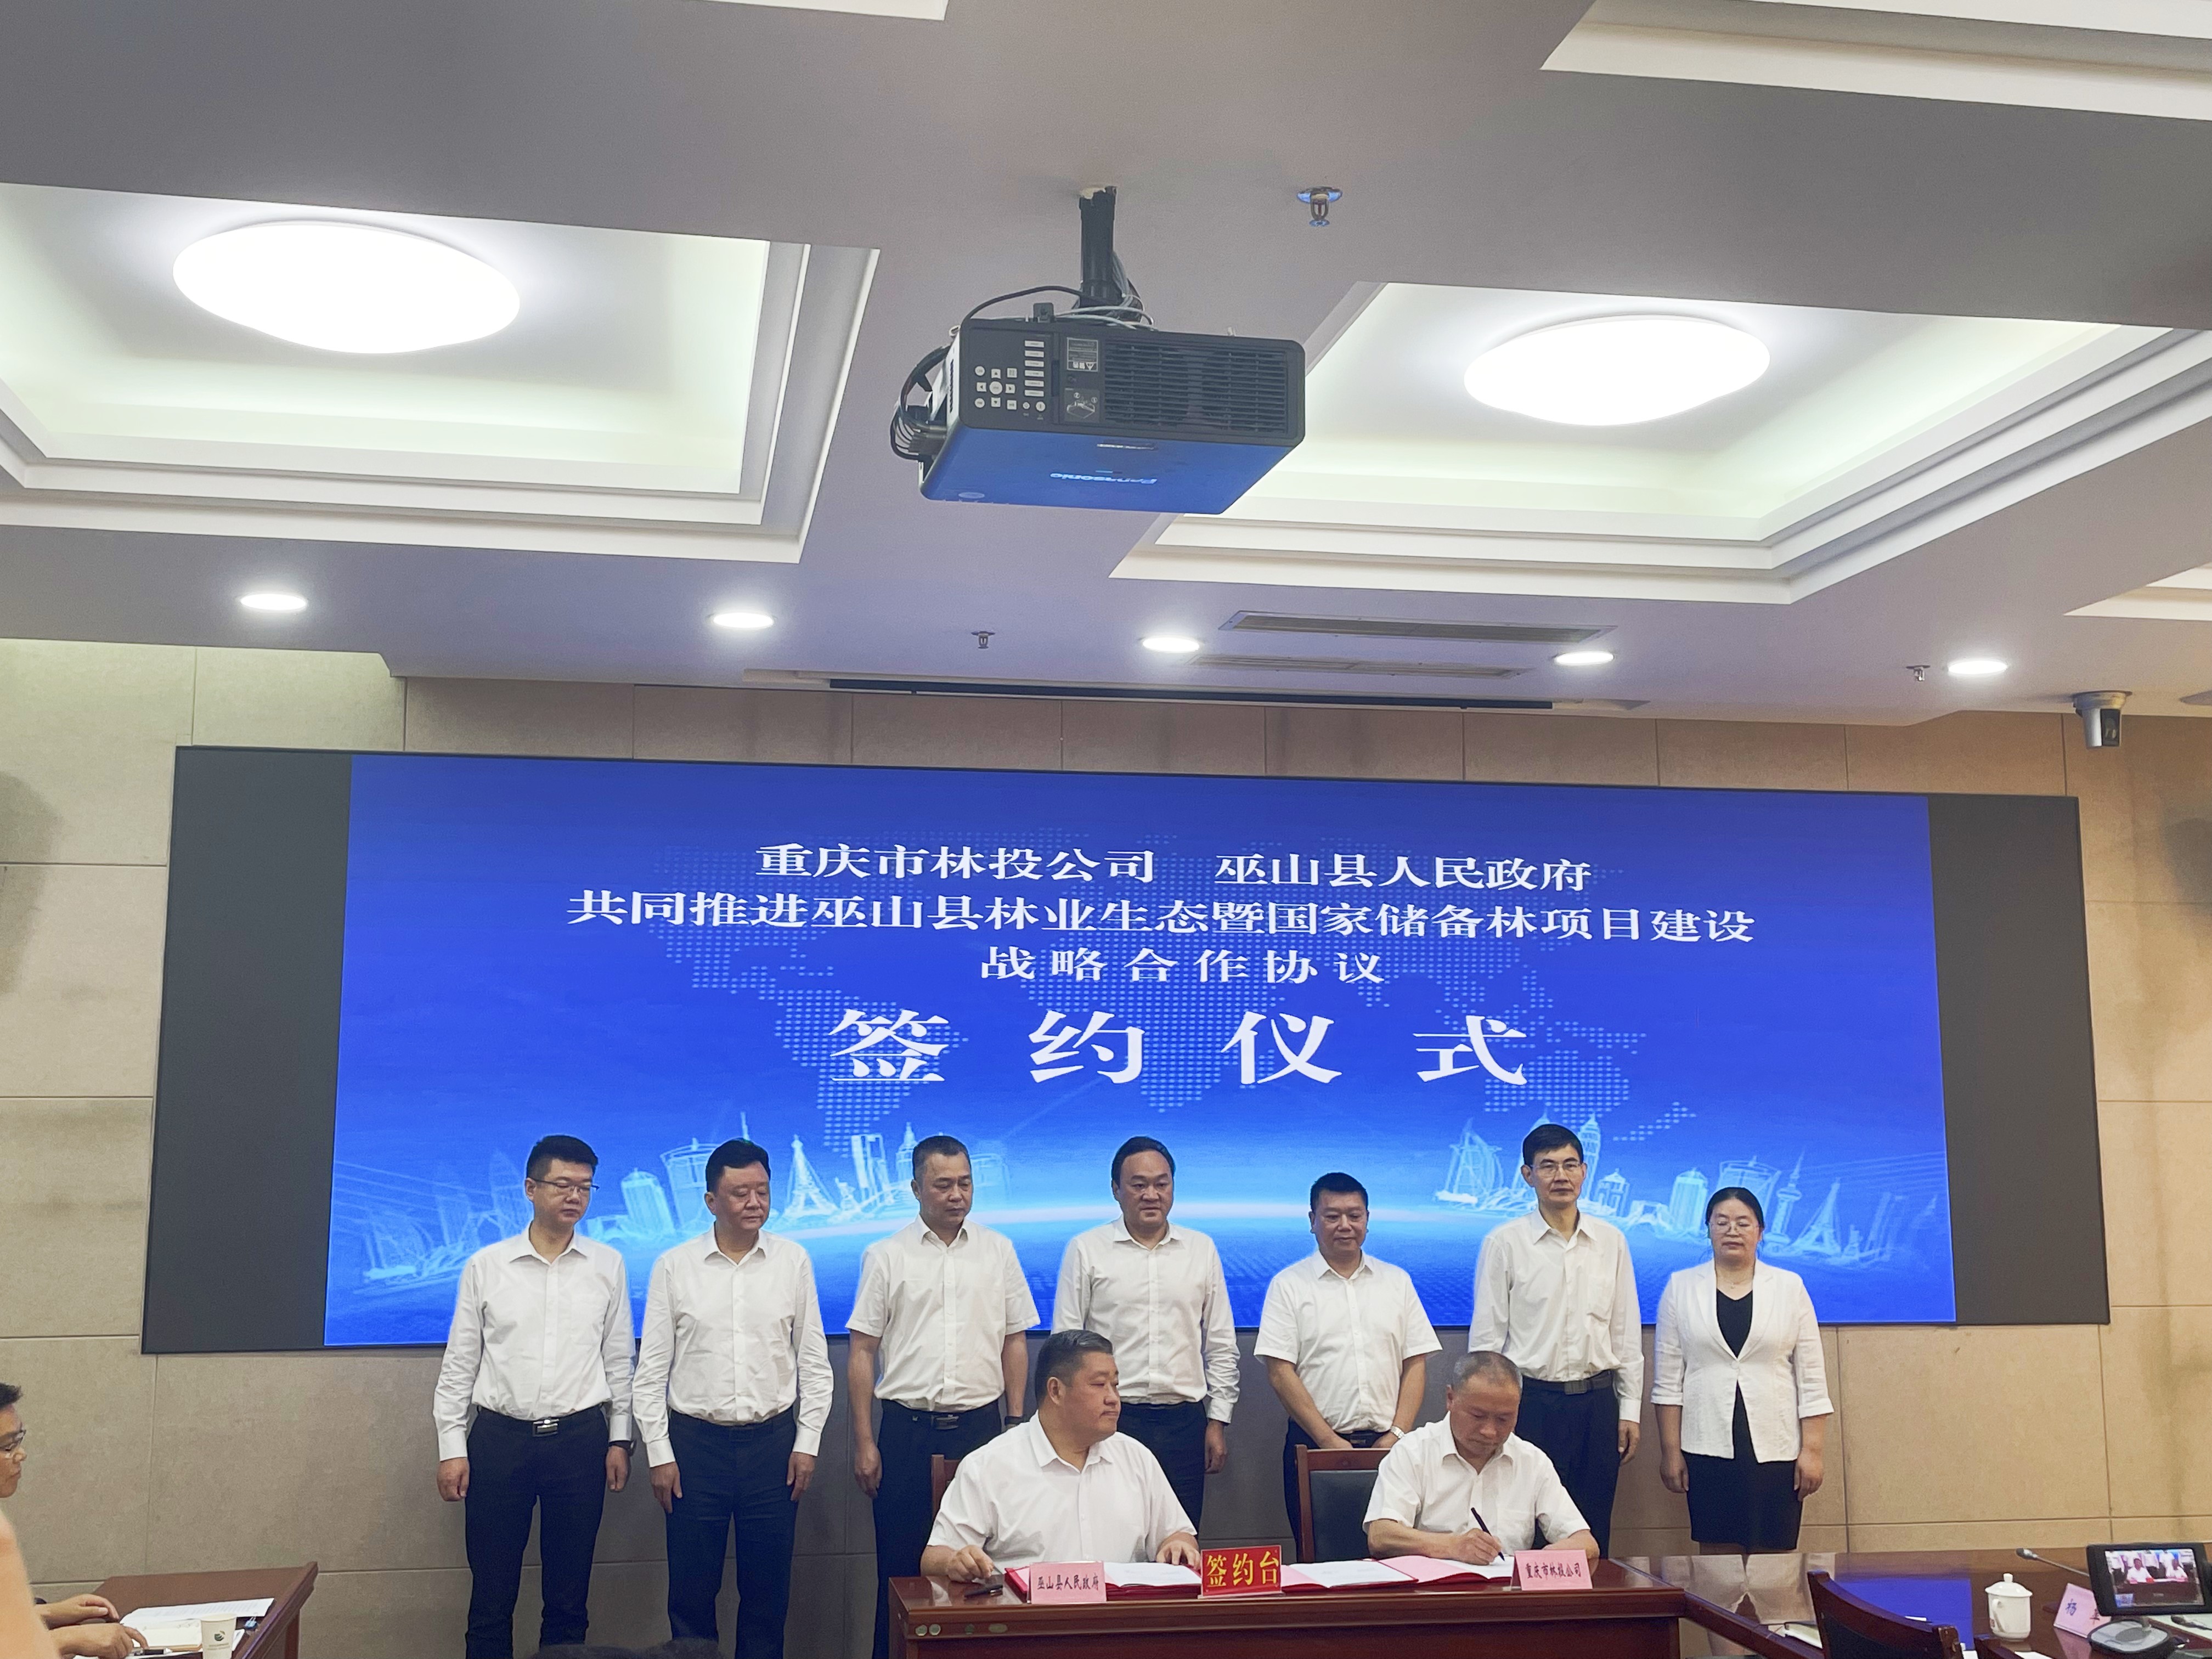 3245澳门新莆京公司与巫山县签署战略合作协议共建50万亩国家储备林